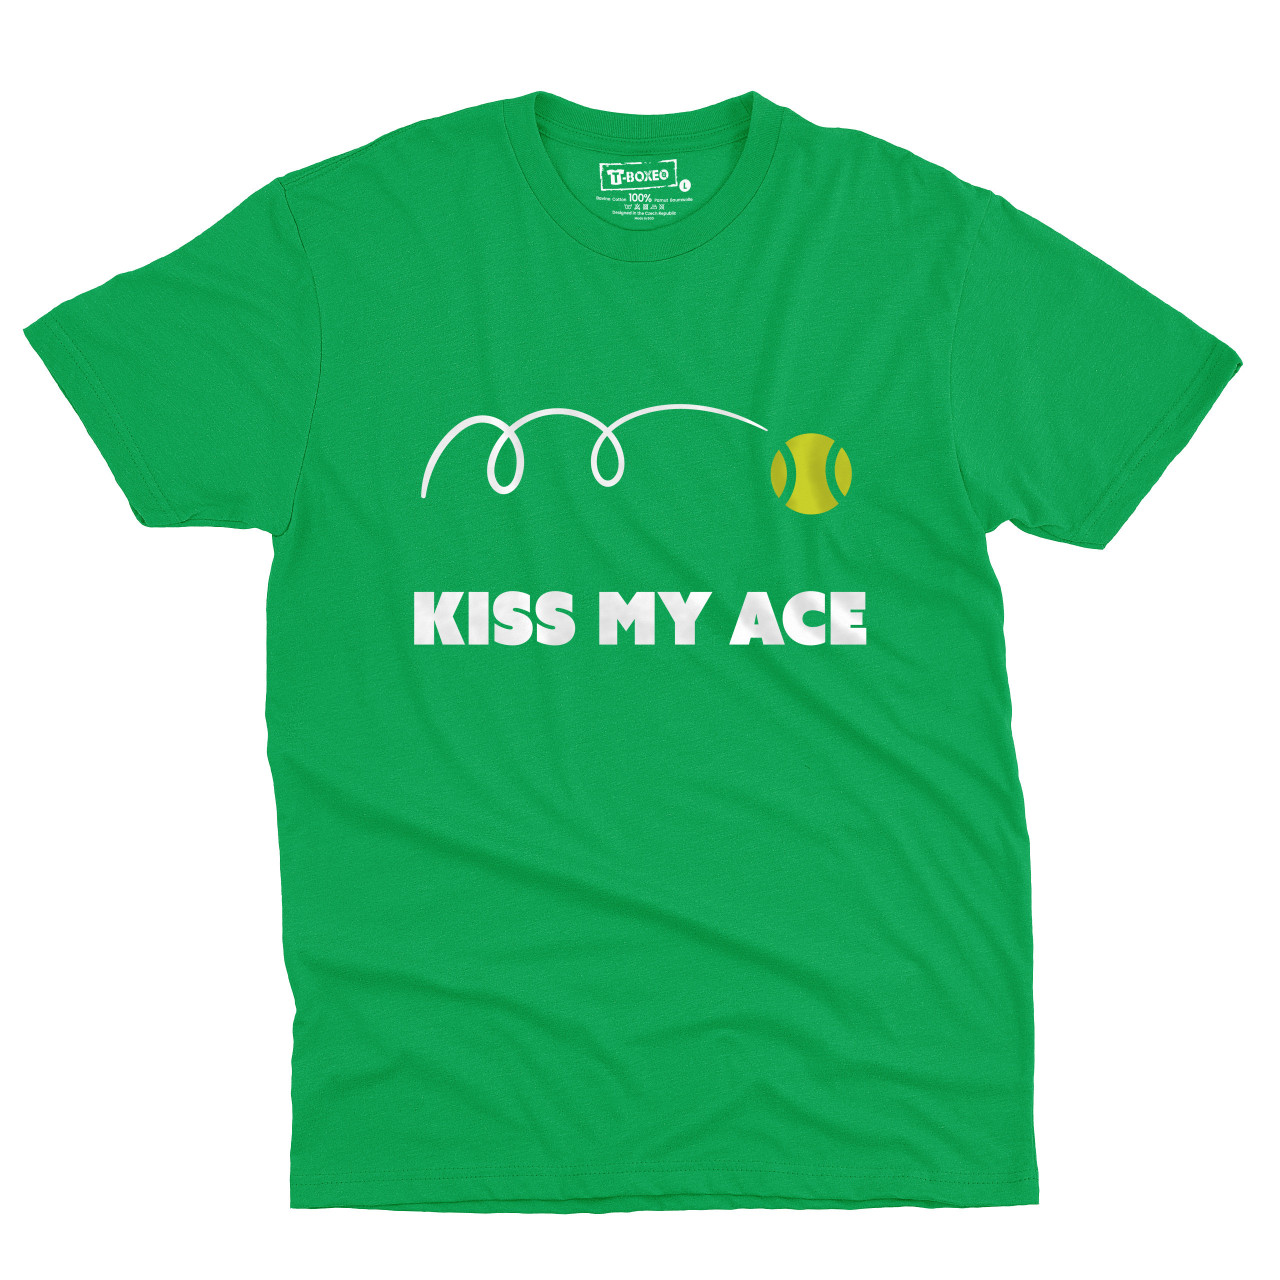 Pánské tričko s potiskem "Kiss my ace"